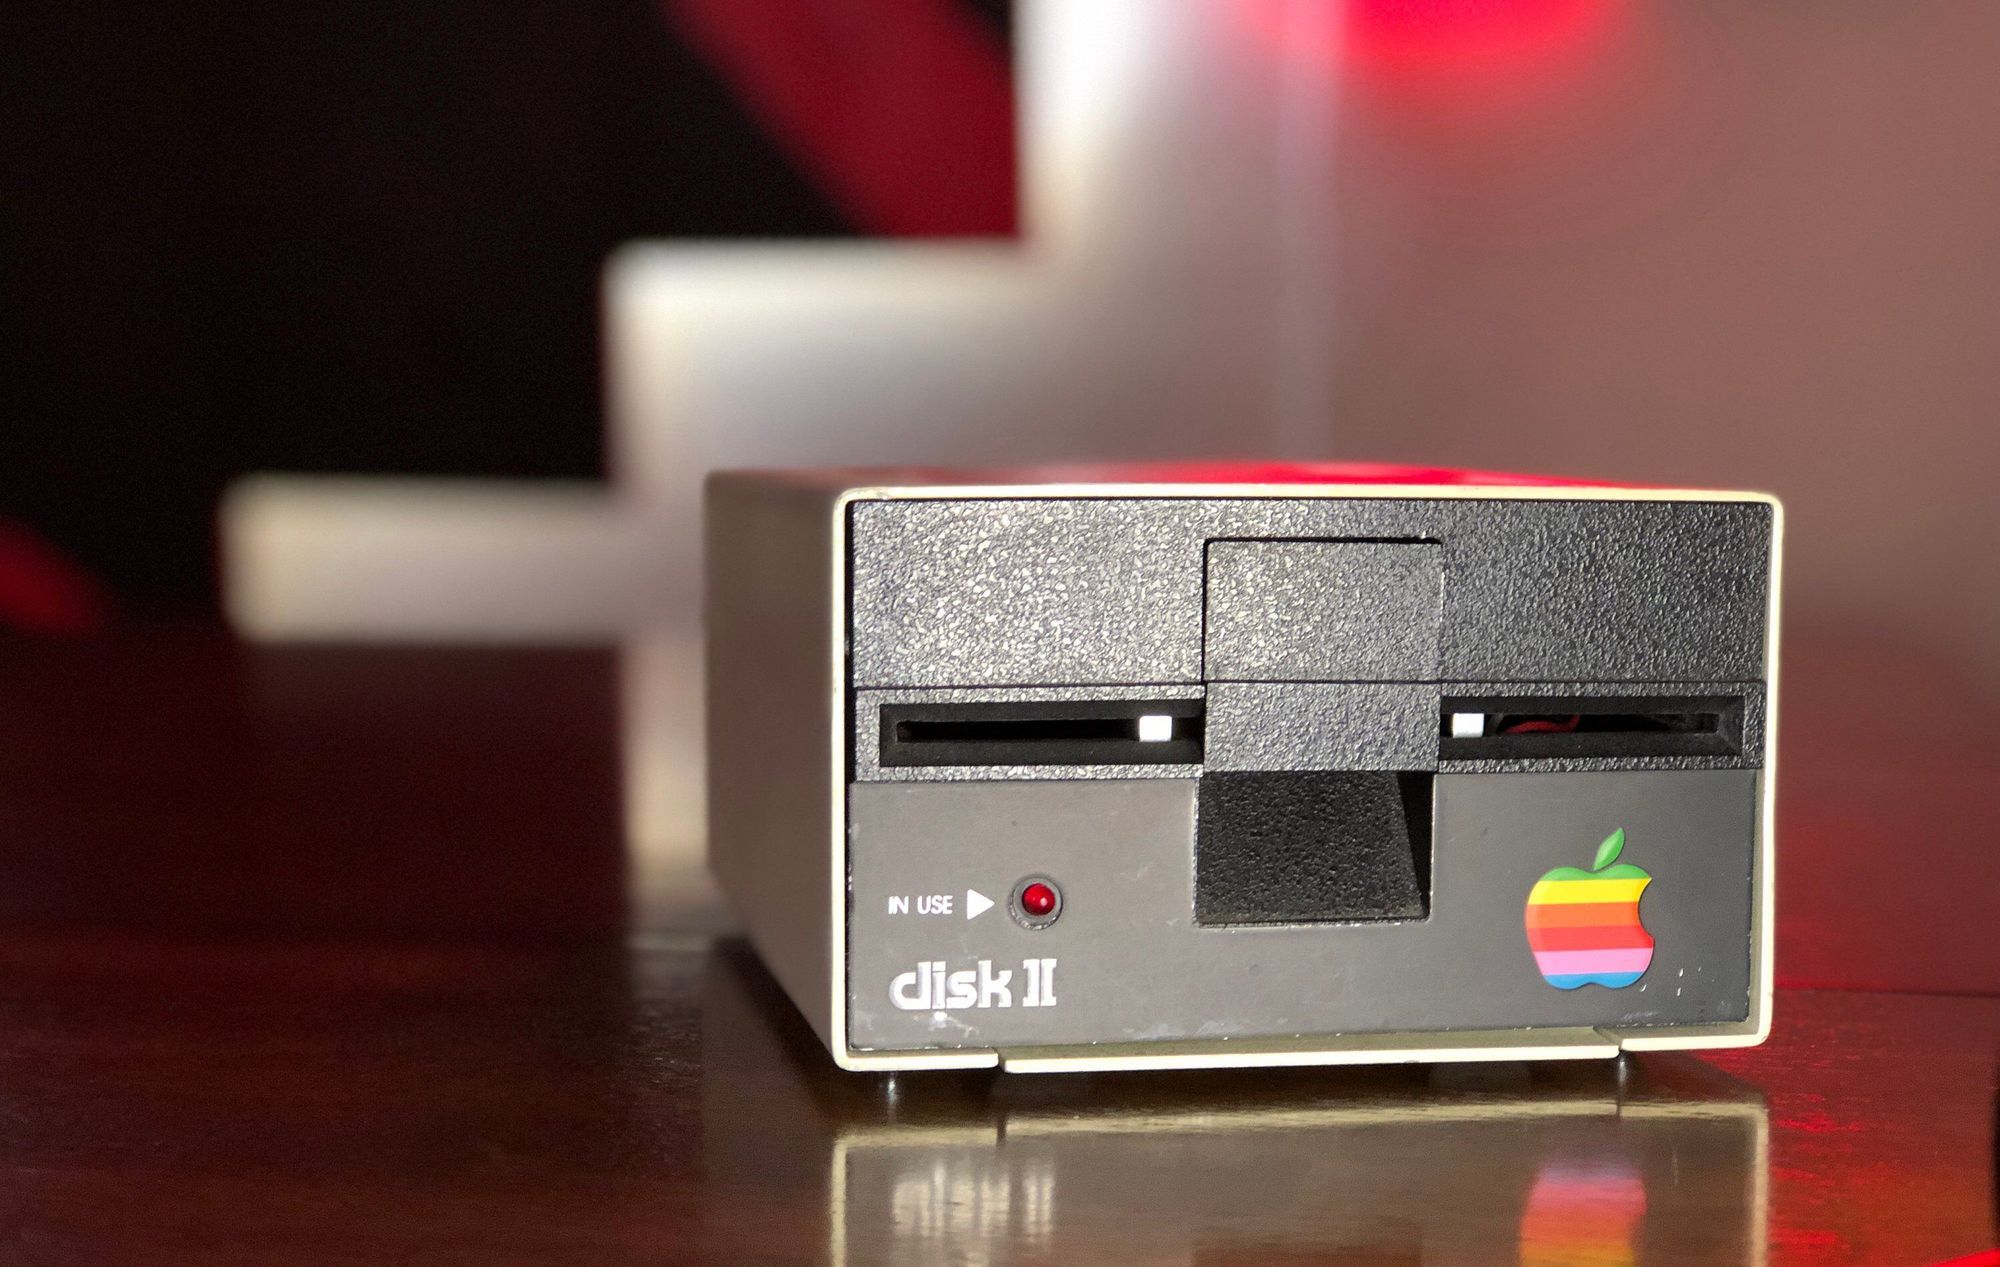 Этот день в истории Apple: компьютер Apple II получает свой первый дисковод Disk II